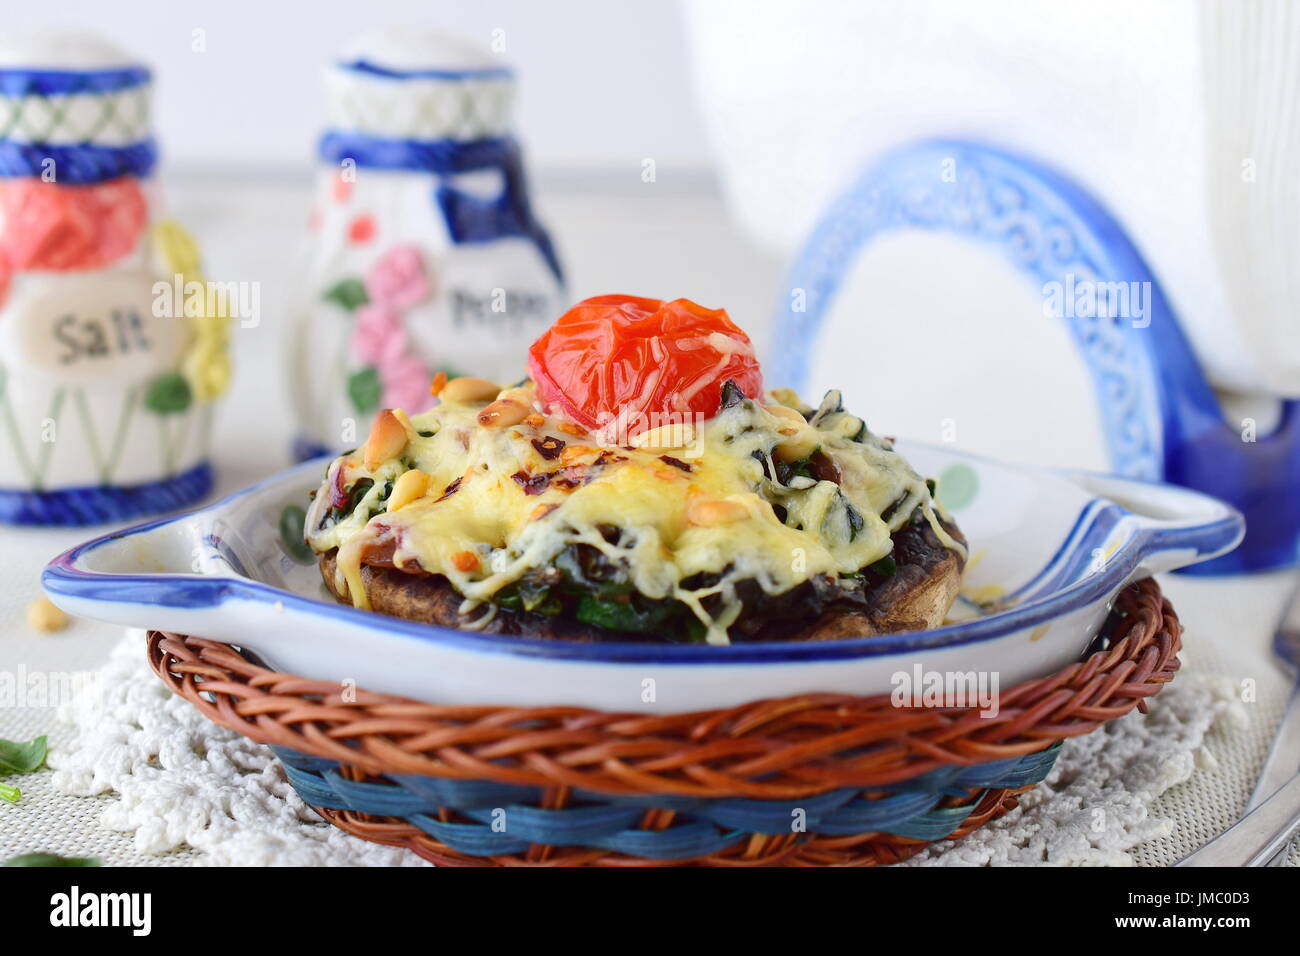 Gegrillte Portobello-Pilze mit Spinat, Pinienkernen, Zwiebeln und Käse in einem Keramiktopf. Gesunde Ernährung-Konzept. Mediterranes Lebensgefühl. Stockfoto